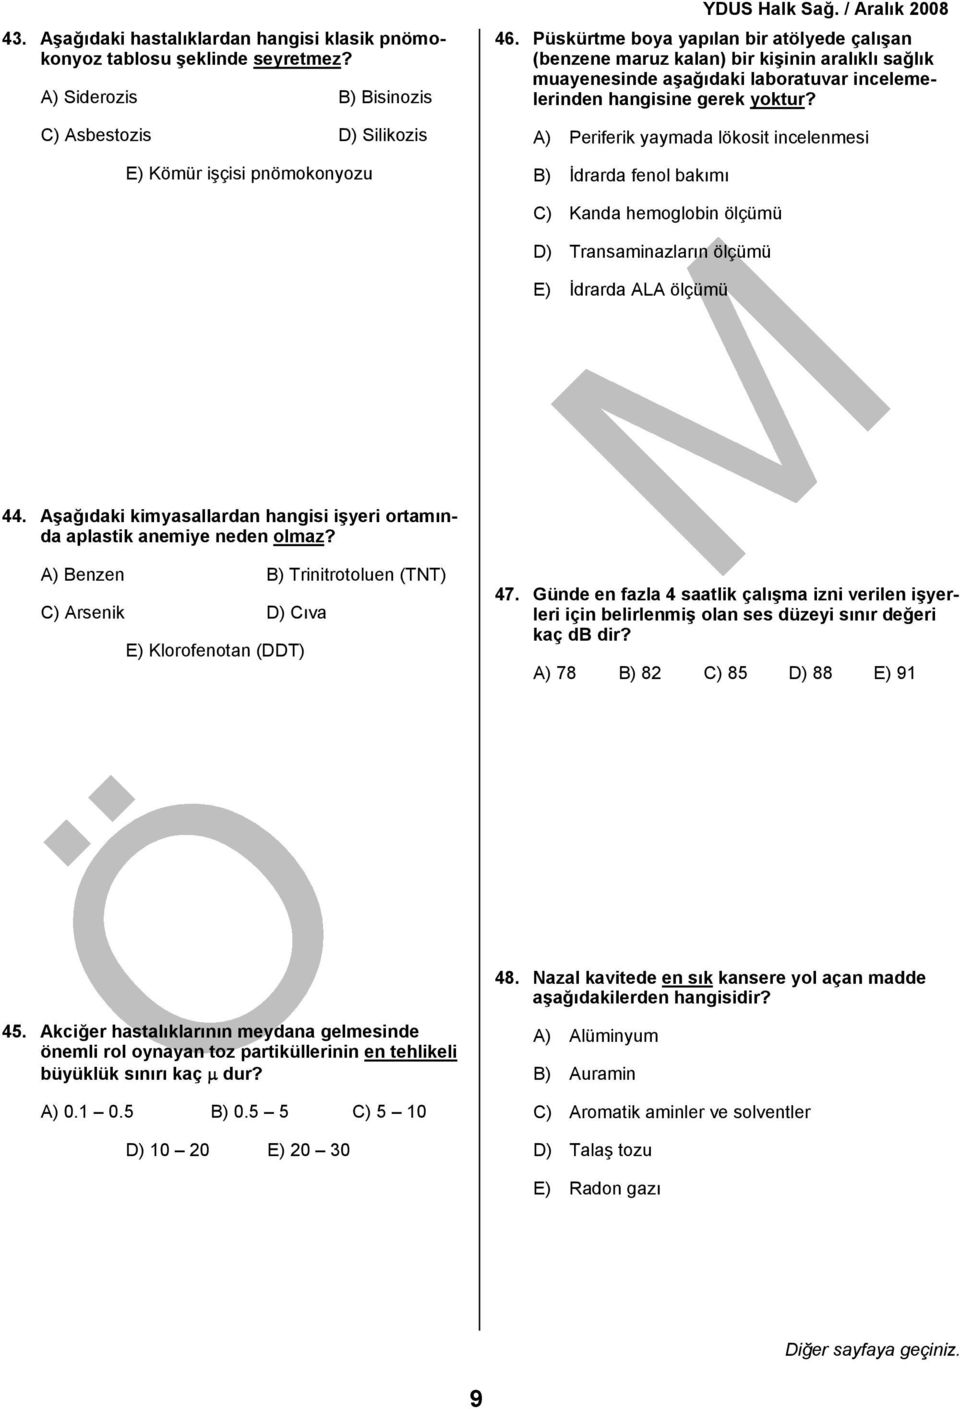 A) Periferik yaymada lökosit incelenmesi B) İdrarda fenol bakımı C) Kanda hemoglobin ölçümü D) Transaminazların ölçümü E) İdrarda ALA ölçümü 44.